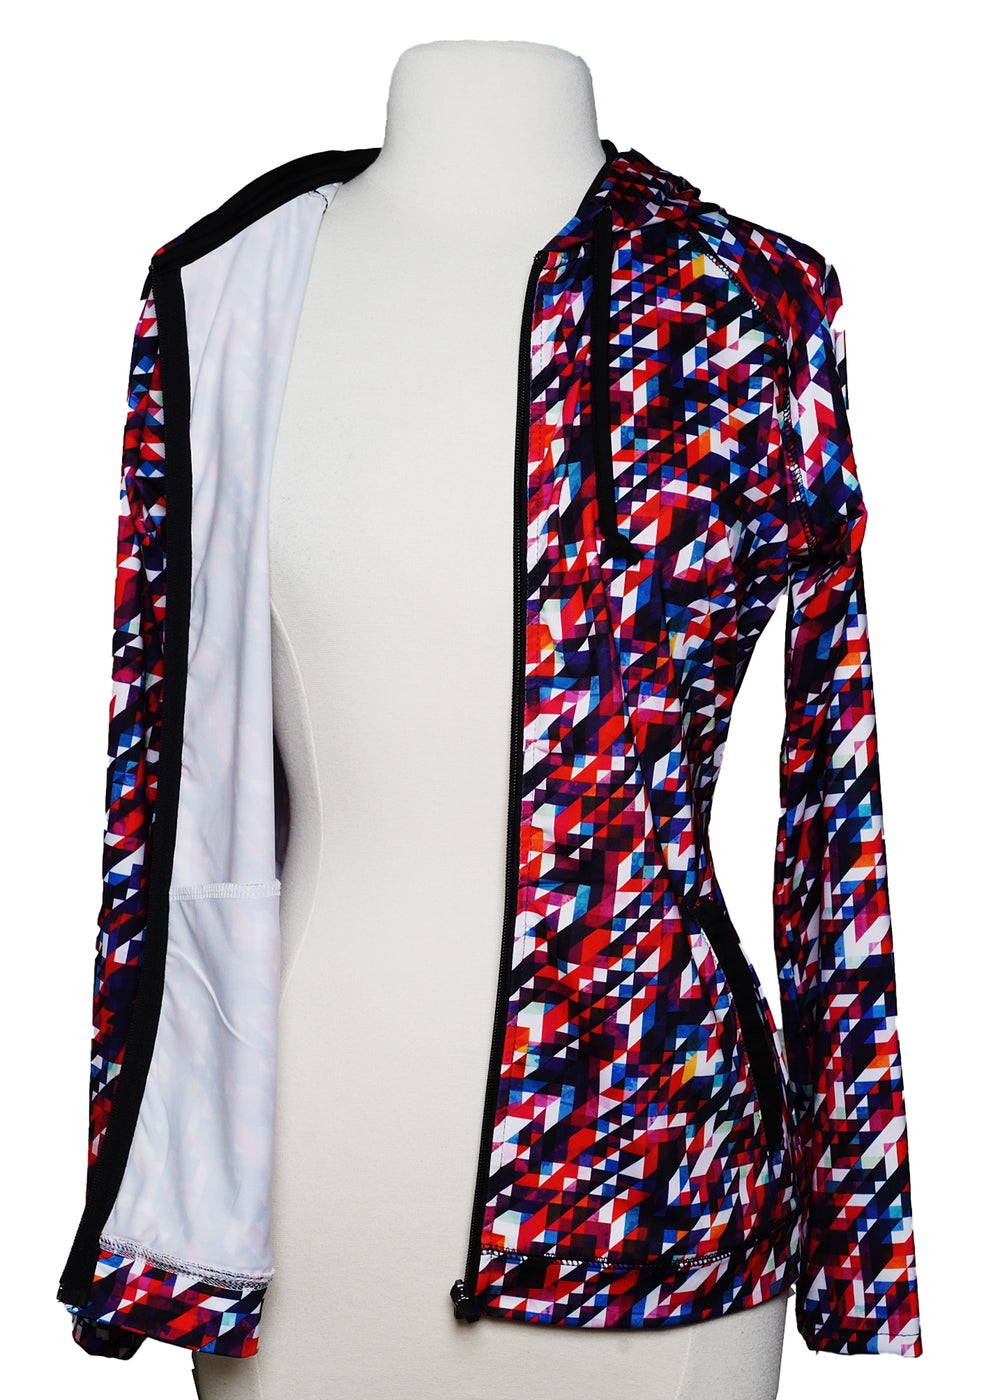 Lulu Sports Hooded Jacket - Multicolored -  Size XL - Skorzie